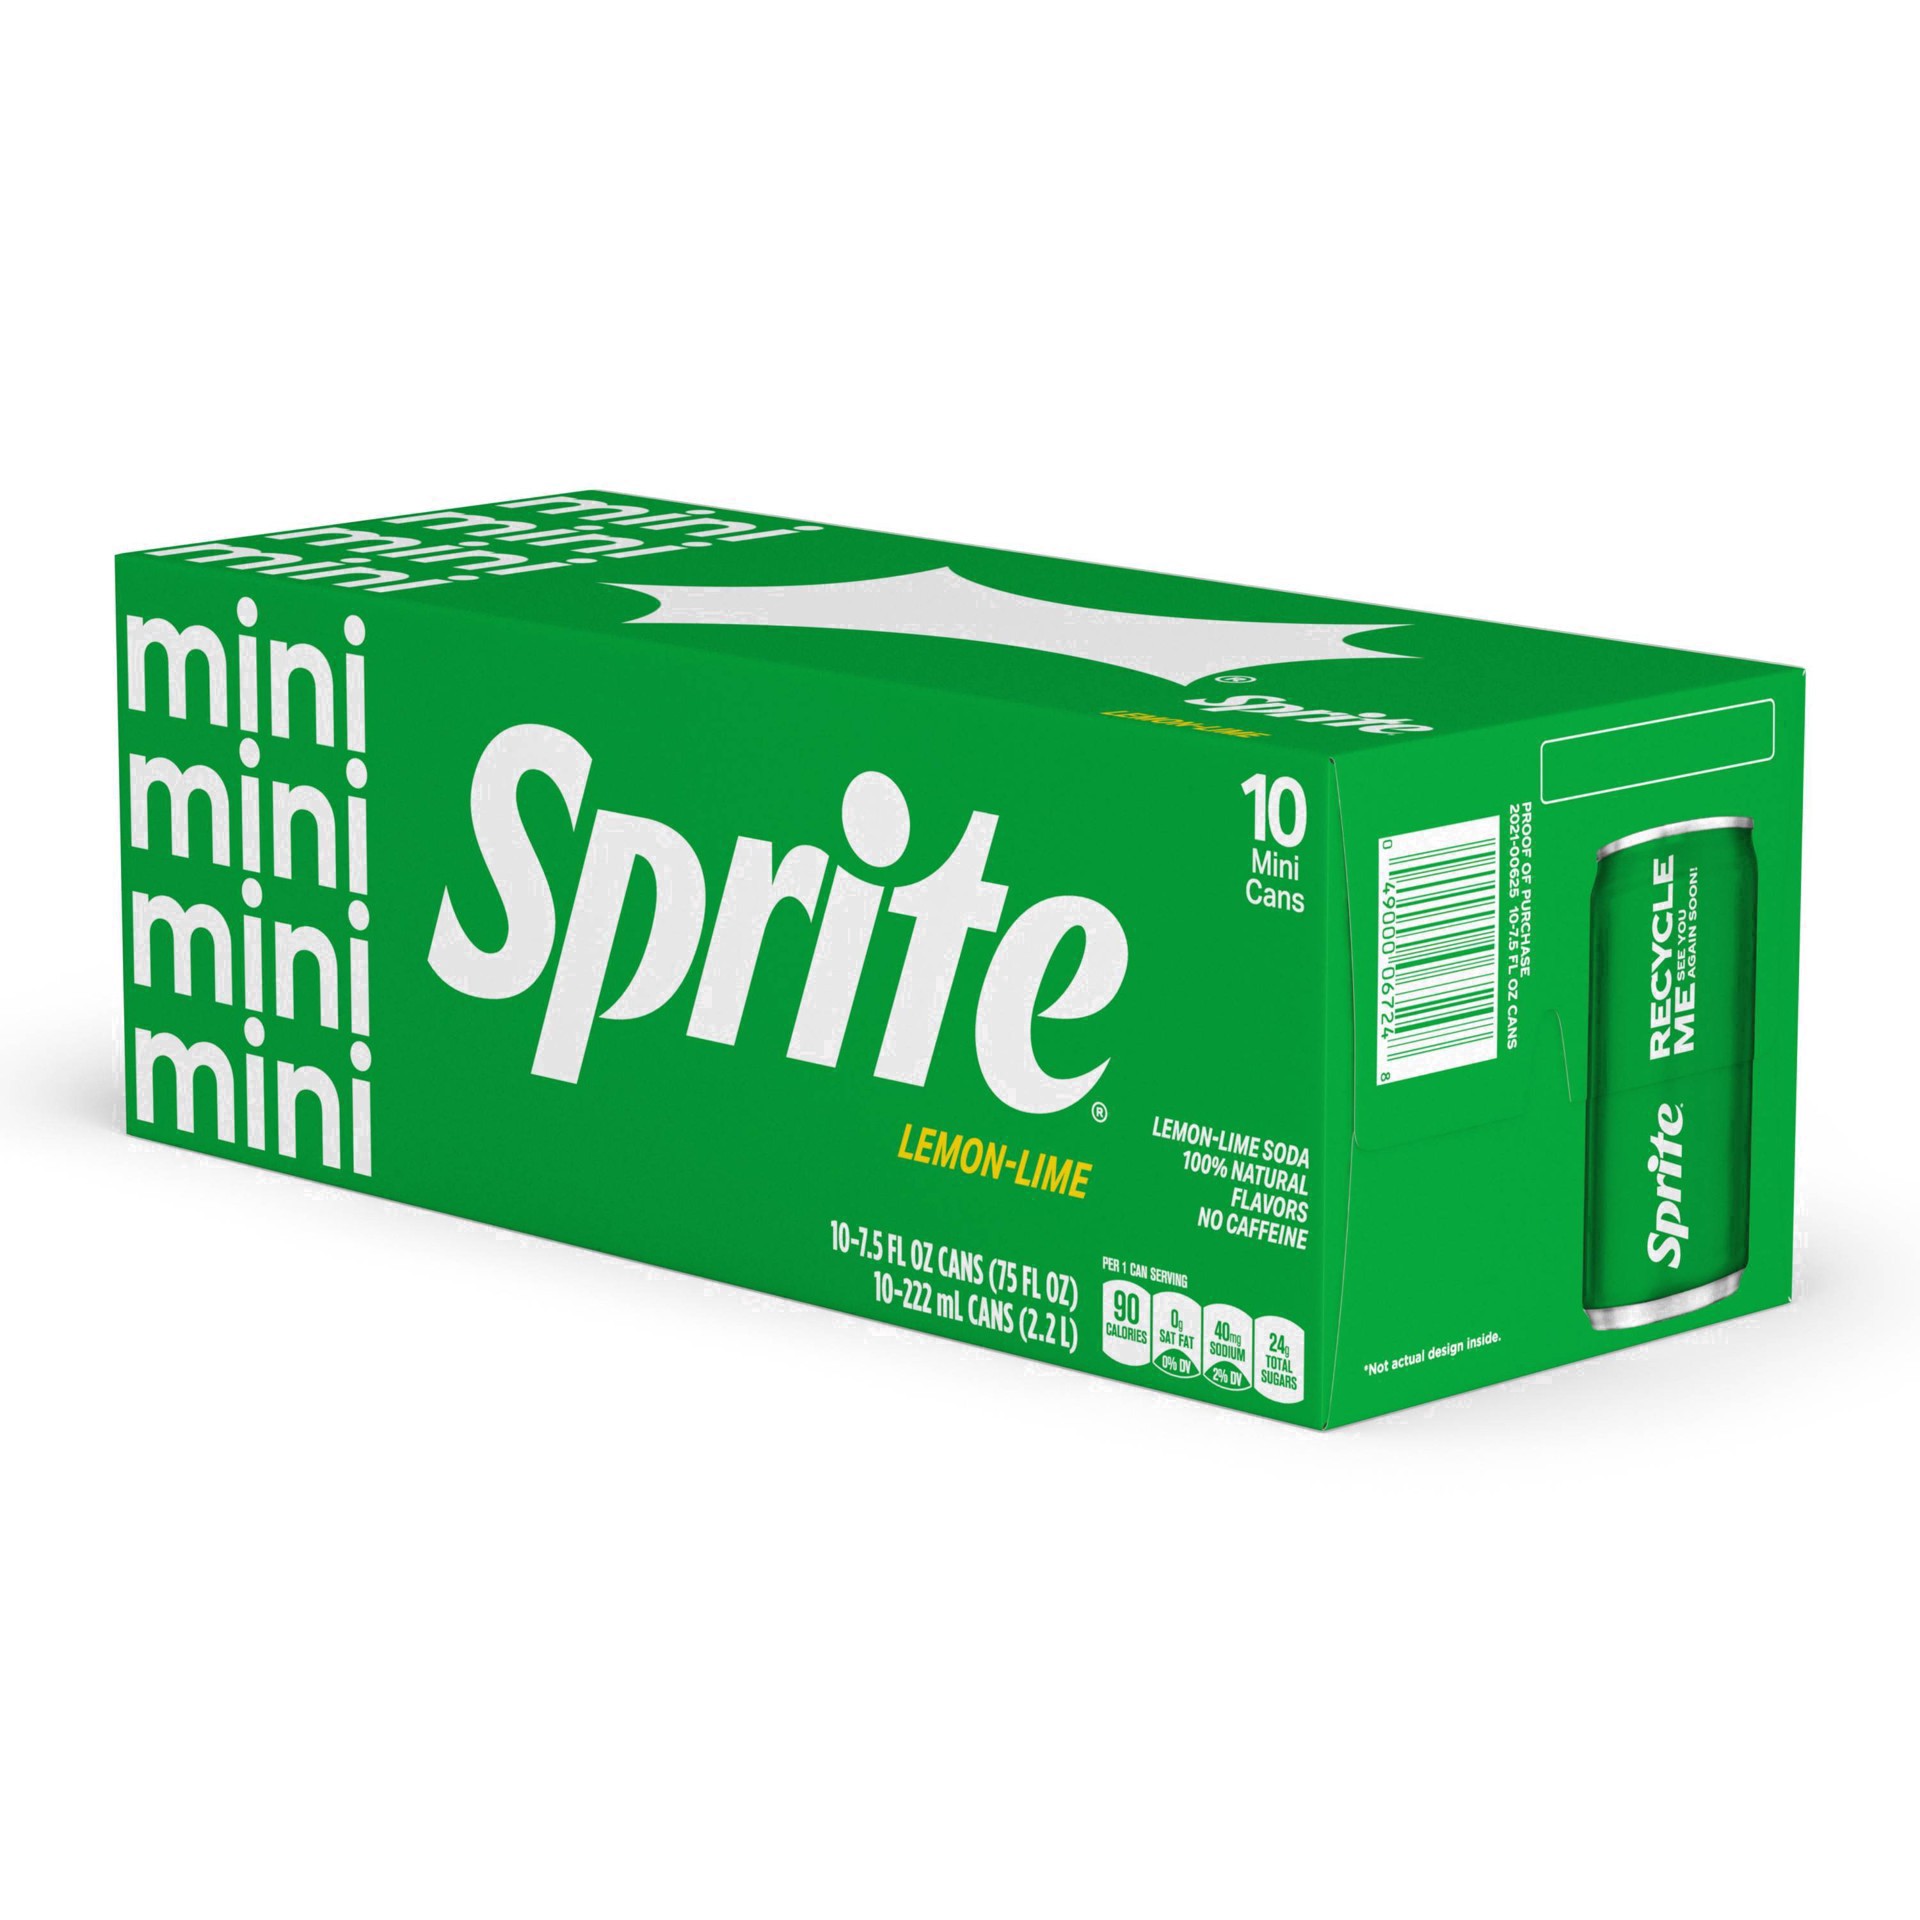 slide 41 of 91, Sprite Lemon Lime Soda Soft Drinks, 7.5 fl oz, 10 Pack, 